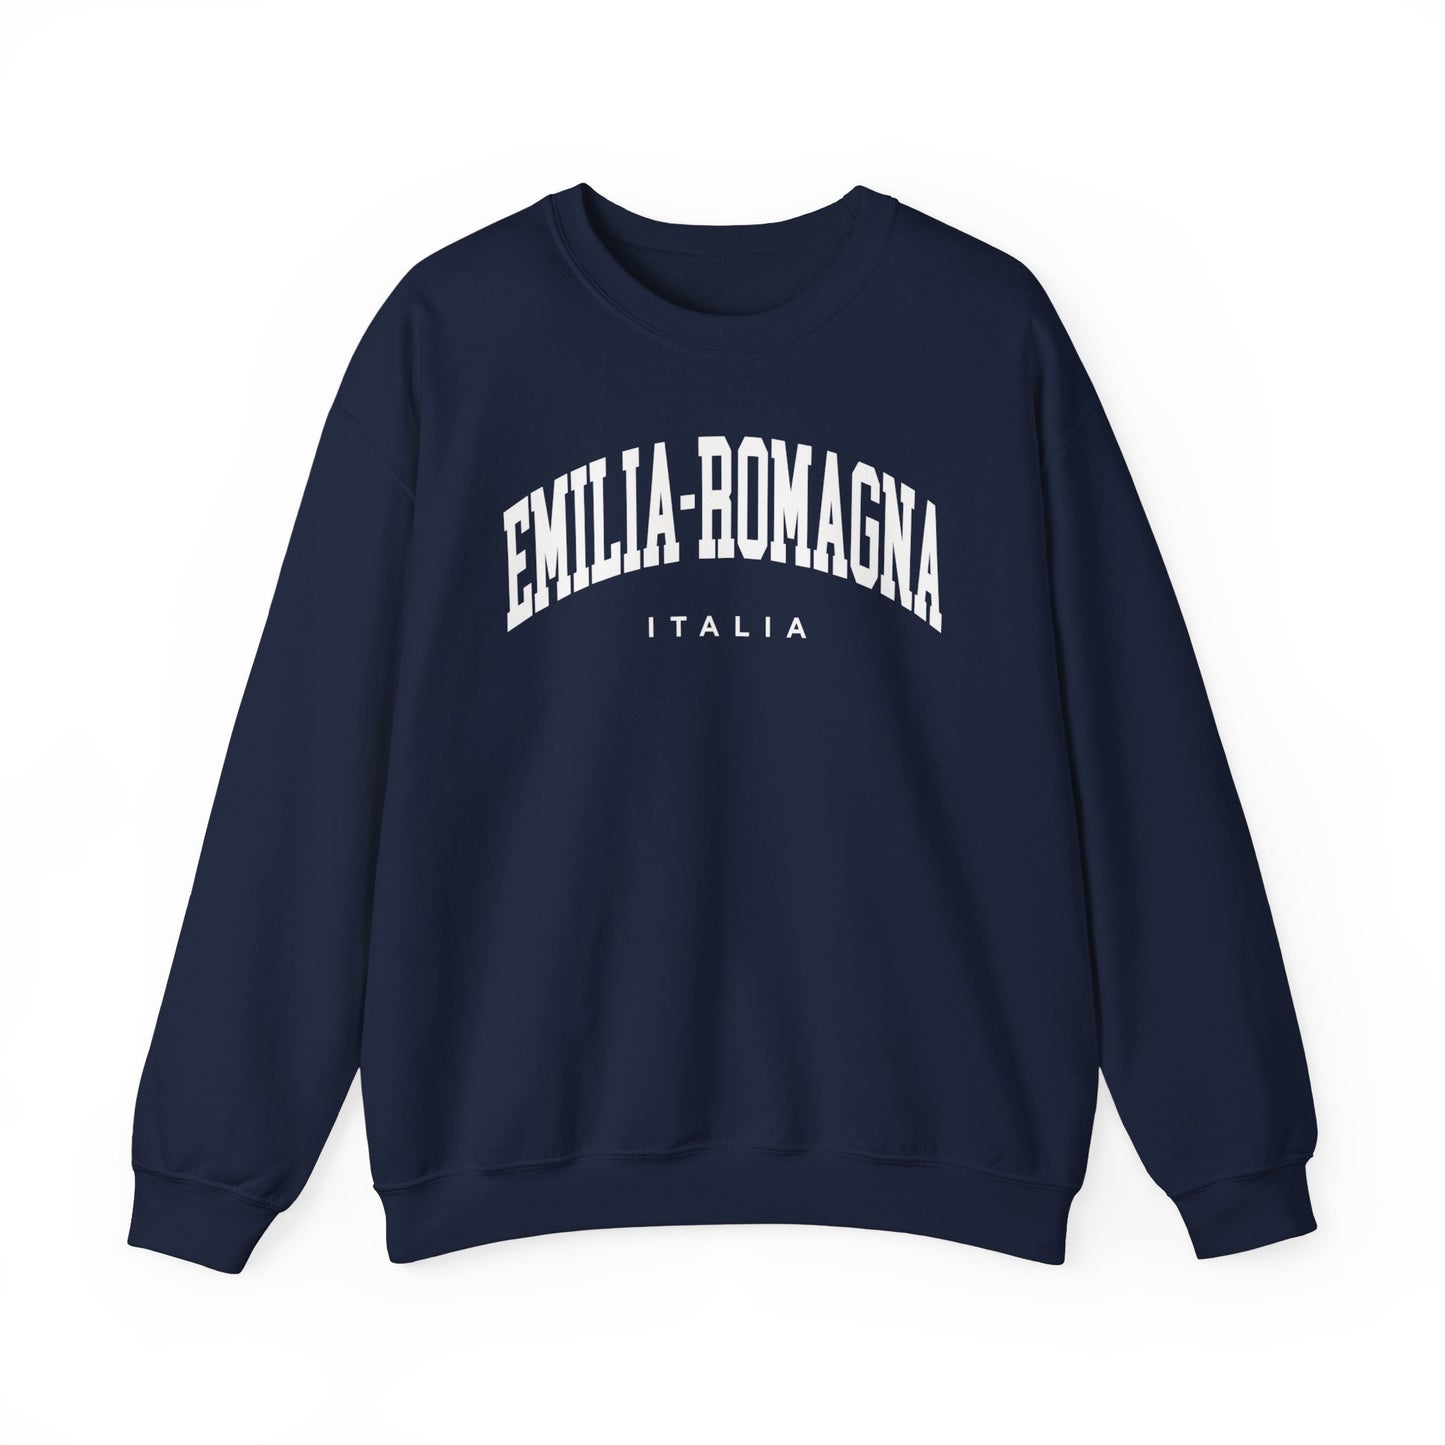 Emilia-Romagna Italy Sweatshirt